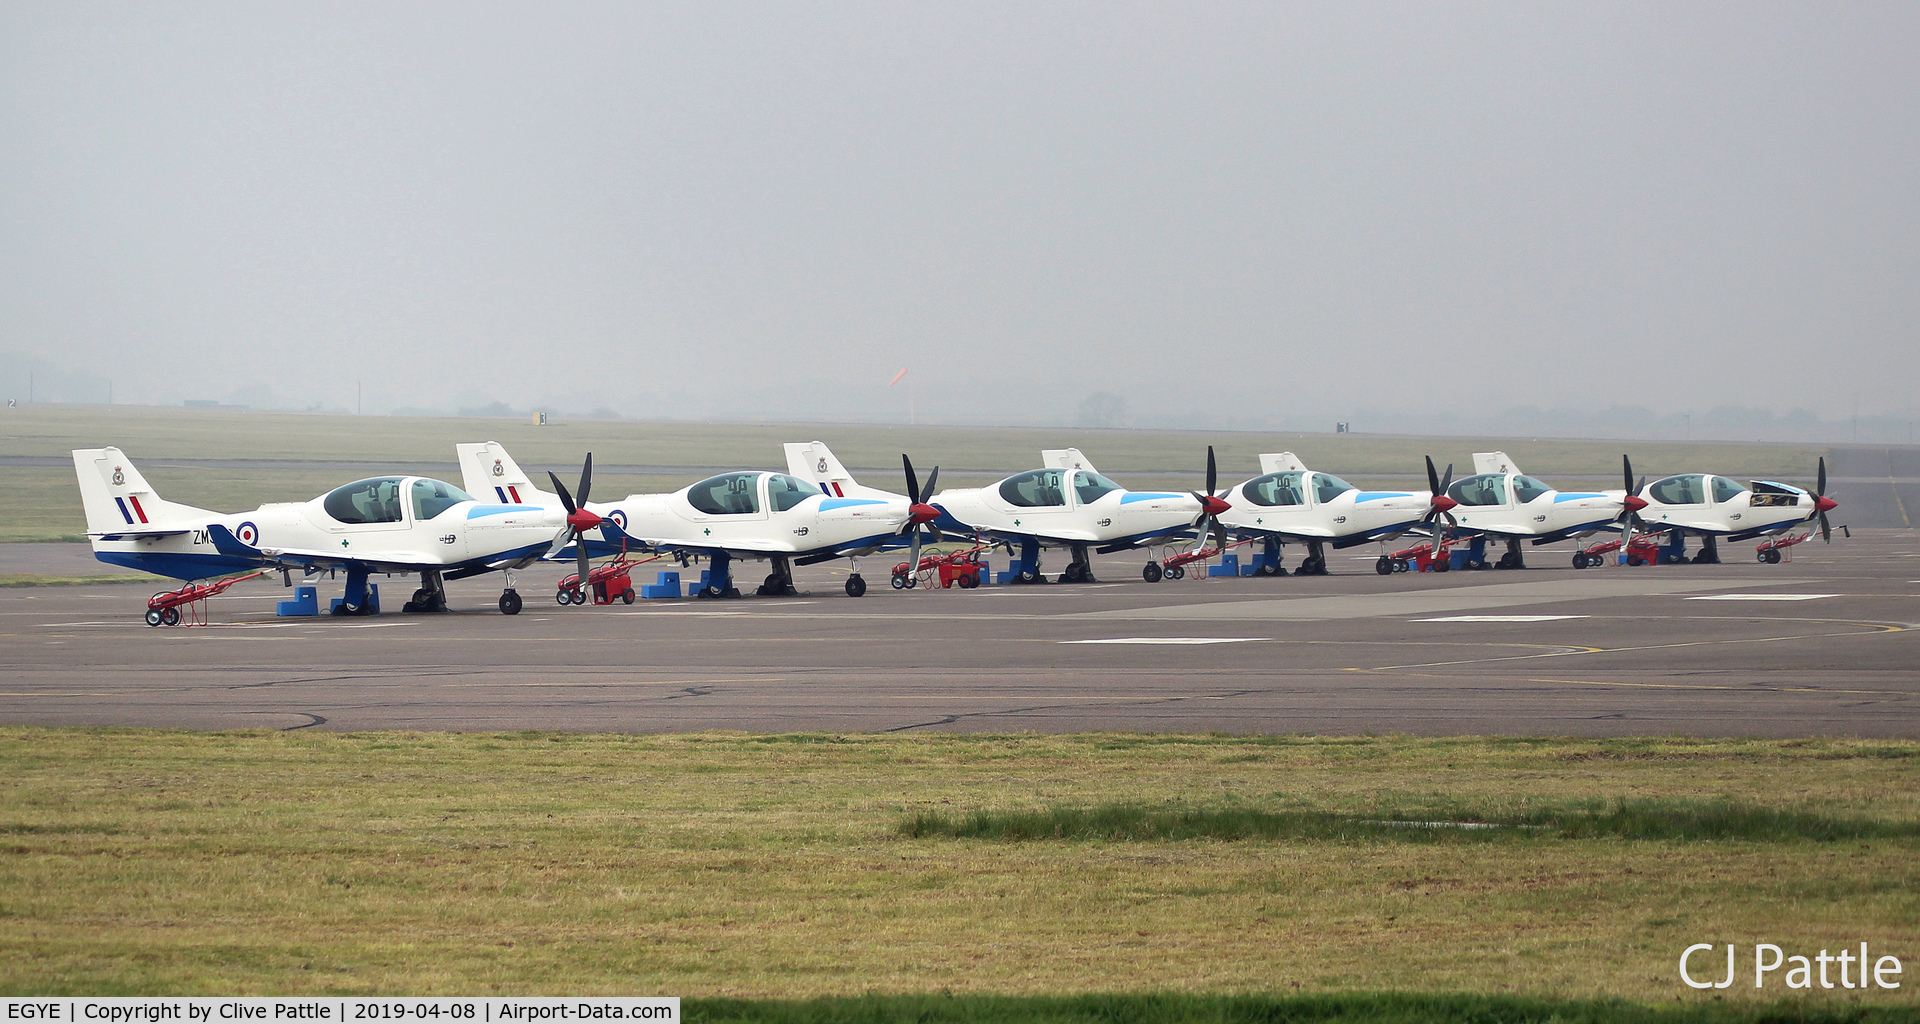 RAF Barkston Heath Airport, Grantham, England United Kingdom (EGYE) - Grob Prefect line-up @ Barkston Heath